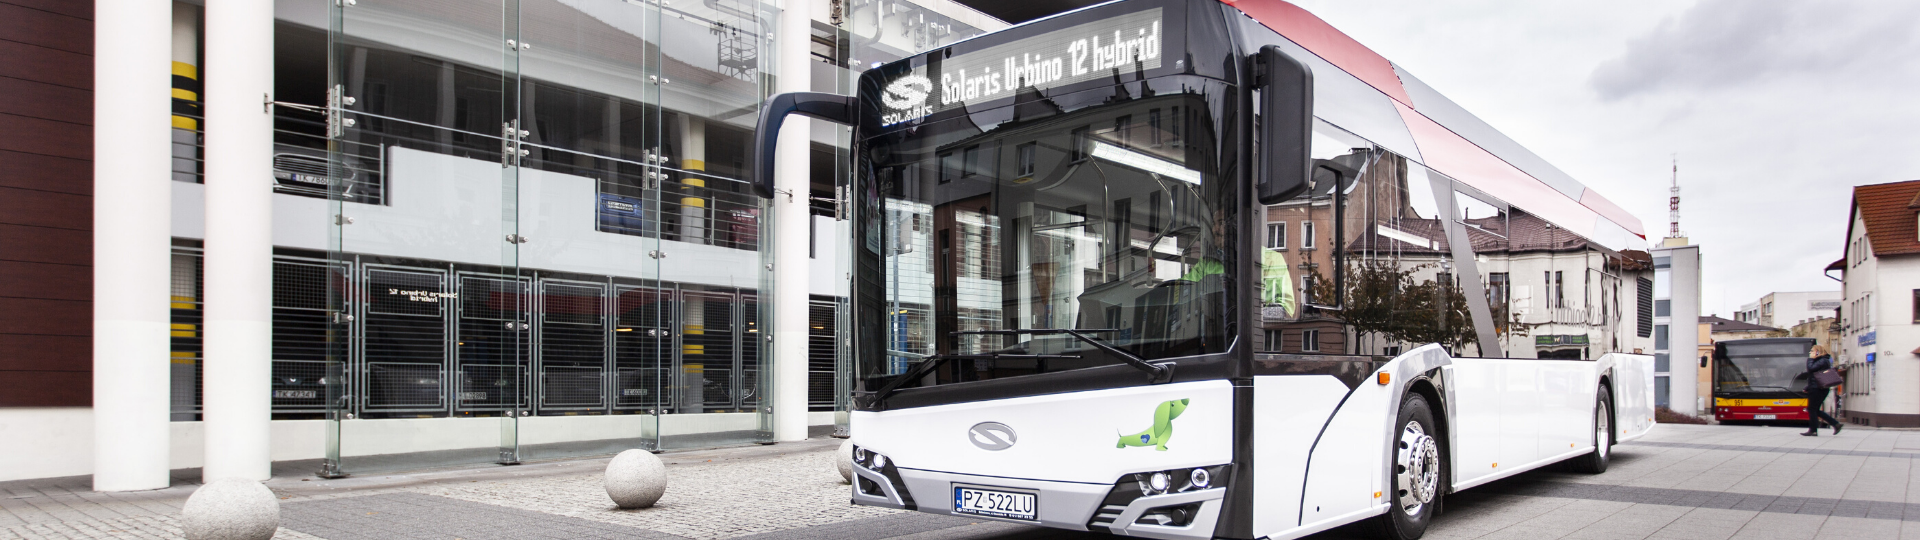 Seven novel hybrid Solaris buses to go to Ząbkowice Śląskie